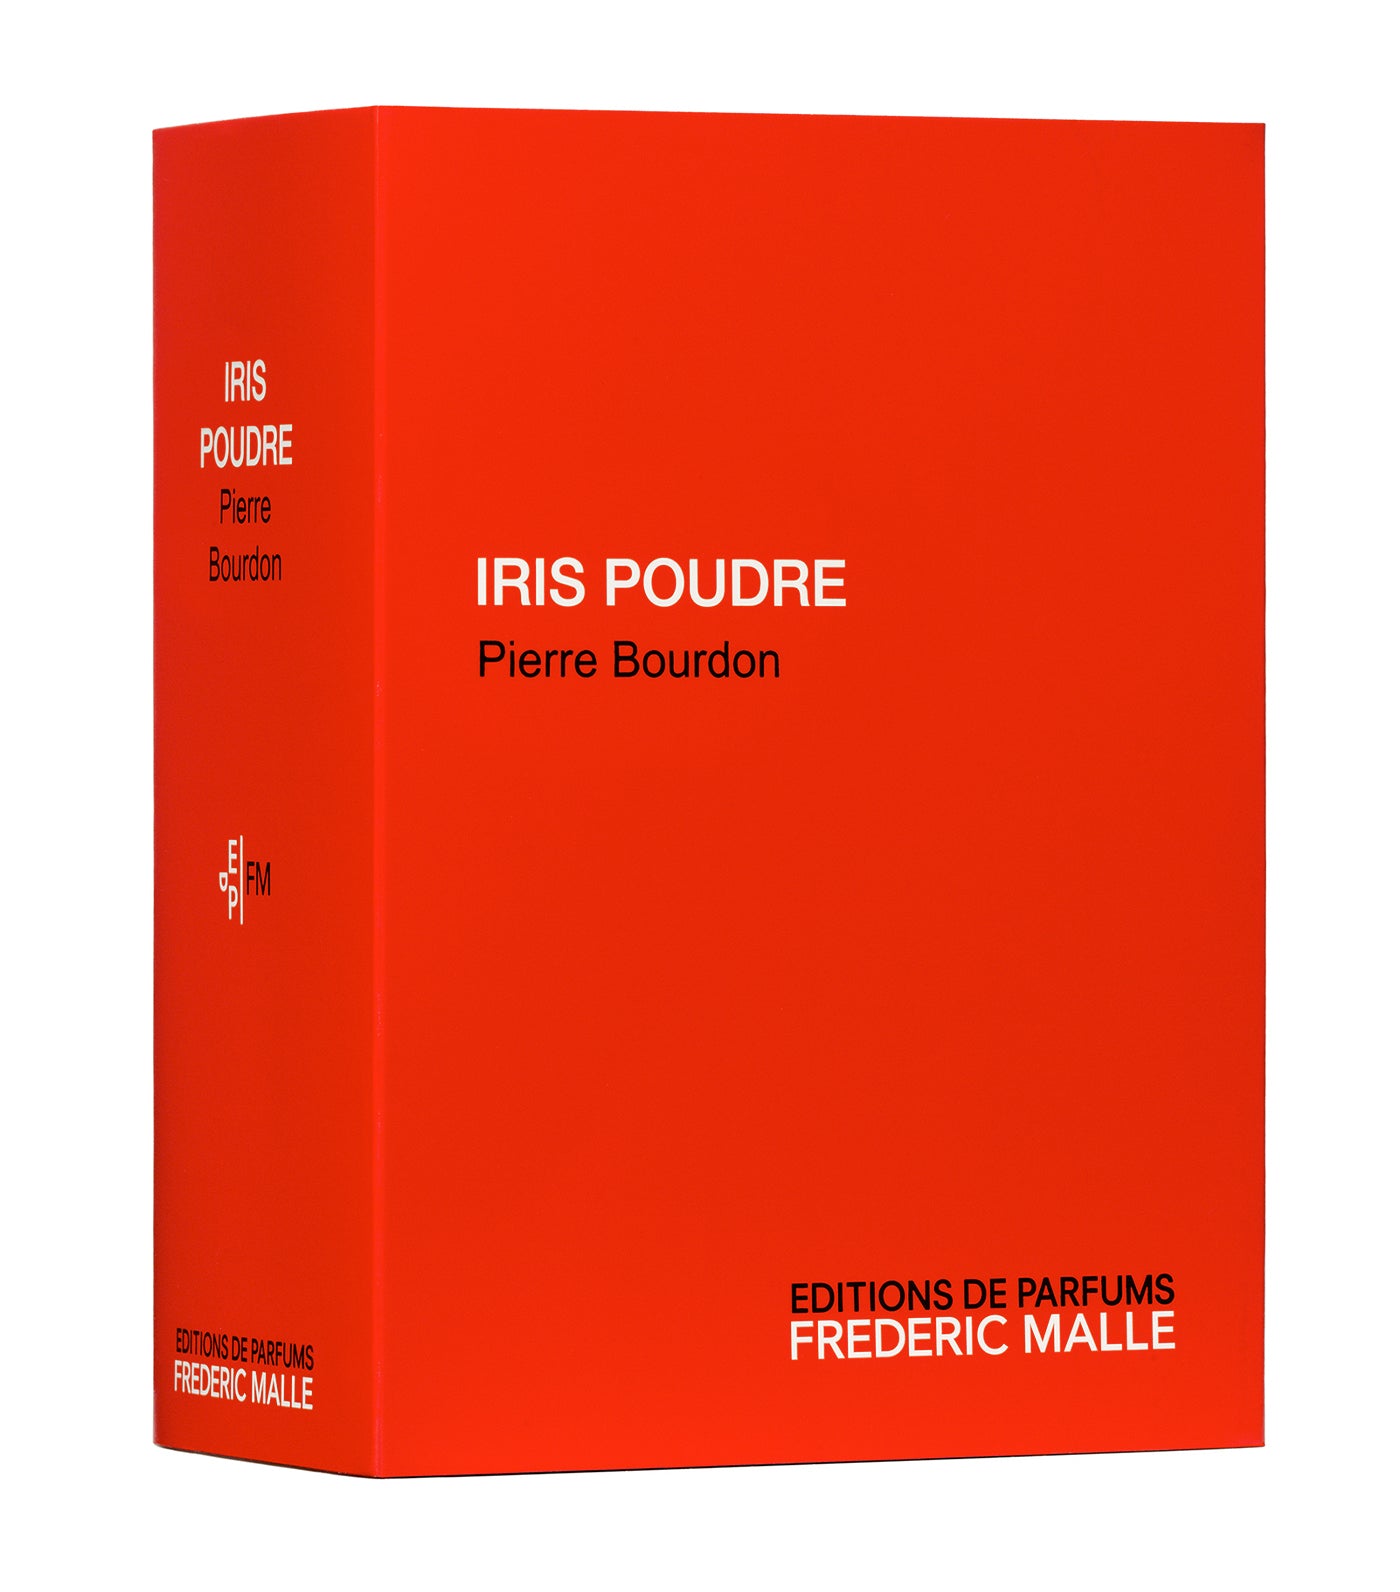 Iris Poudre Perfume by Pierre Bourdon